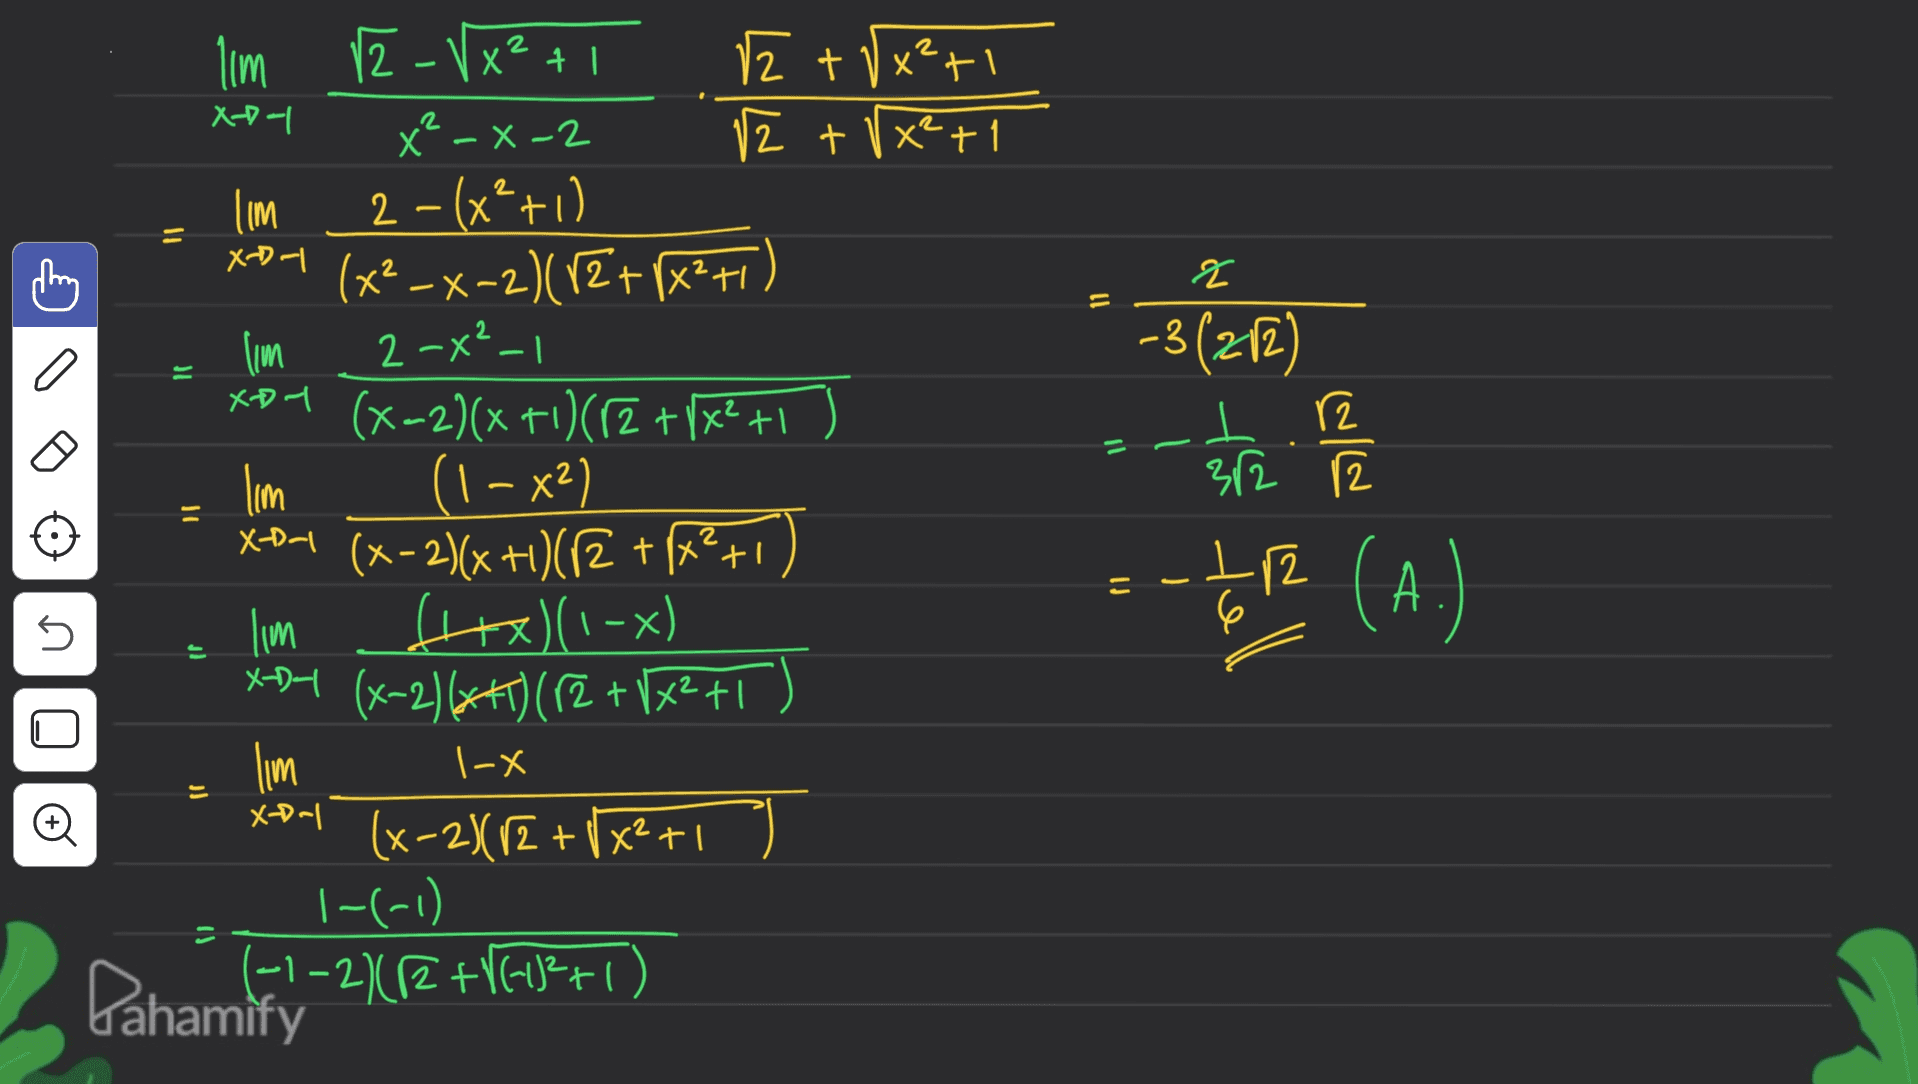 X-D-1 lim = Y q 11 10 ון lim 2-Vx²+1 12 + 0x²+1 X²-X-2 12 + 1x2 +1 2 – (x² + 0 Xoot (x2-x-2)(x2+[X2+1) lim 2-x²_1 xo4 (x-2)(x+1)(r2 + 1x2 +1 ) lim (1 – x2) X-D-1 (x-2)(x+1)/2 +1+²+1) lim fH+x)(1-x) X-B- (x-2)(**T) (r2 + x²+1 lim (x-2)/2 + (x²+1 1-(-1) ()11 -3 (272) 一 - 1 1 2 2 - 2 (A.) = il U n o l-x Ft X-D-| Pahamky -2/C2 +Y]271) 